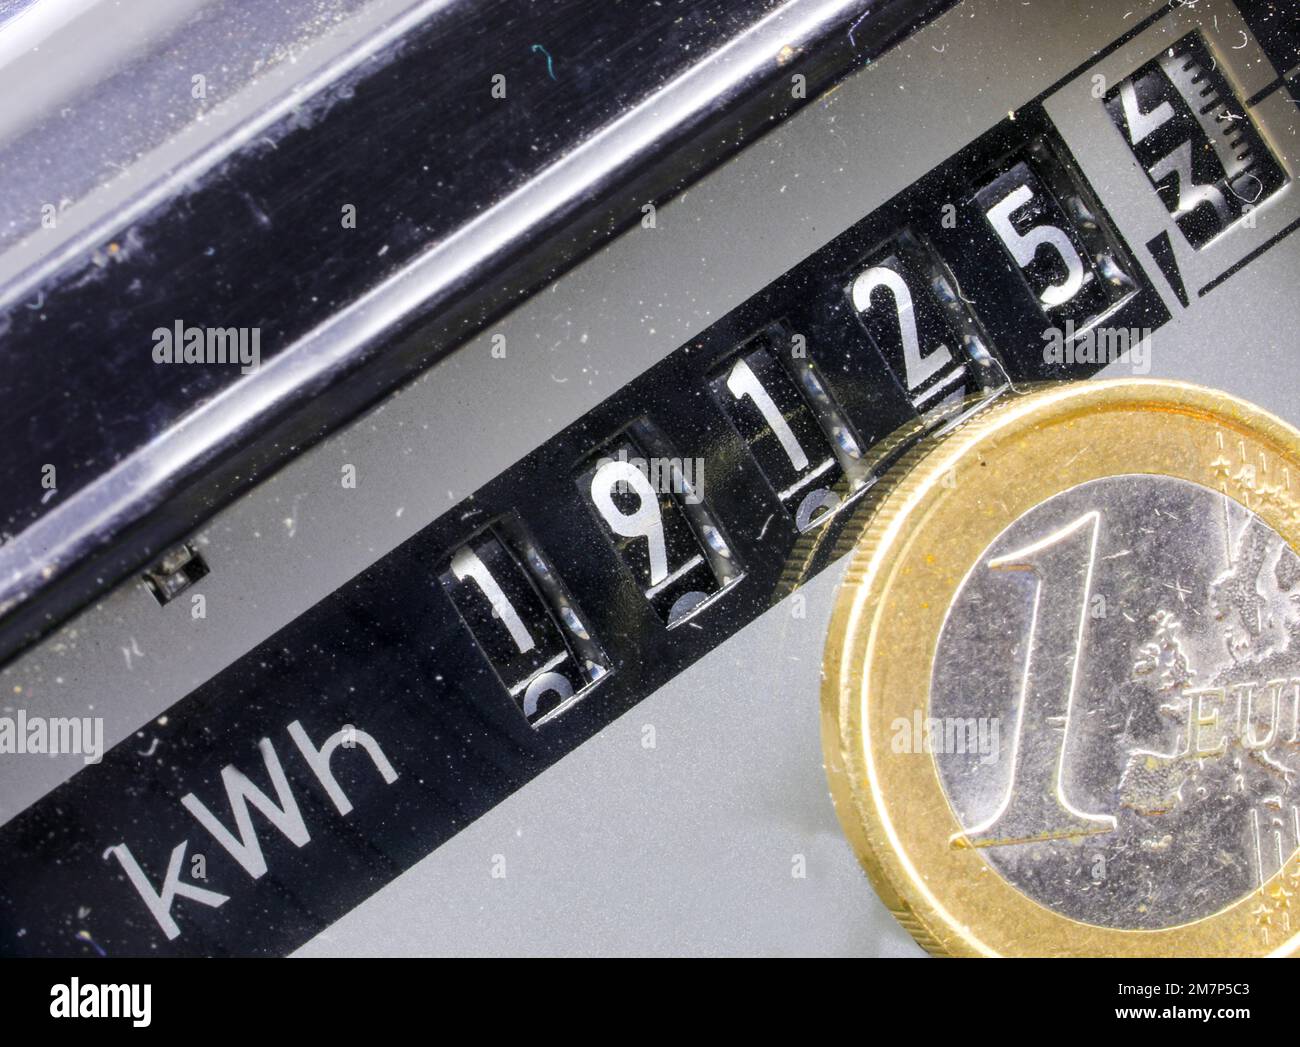 Compteur électrique ancien avec les nombres en kwh pour mesurer l'électricité consommée et les pièces en euros Banque D'Images